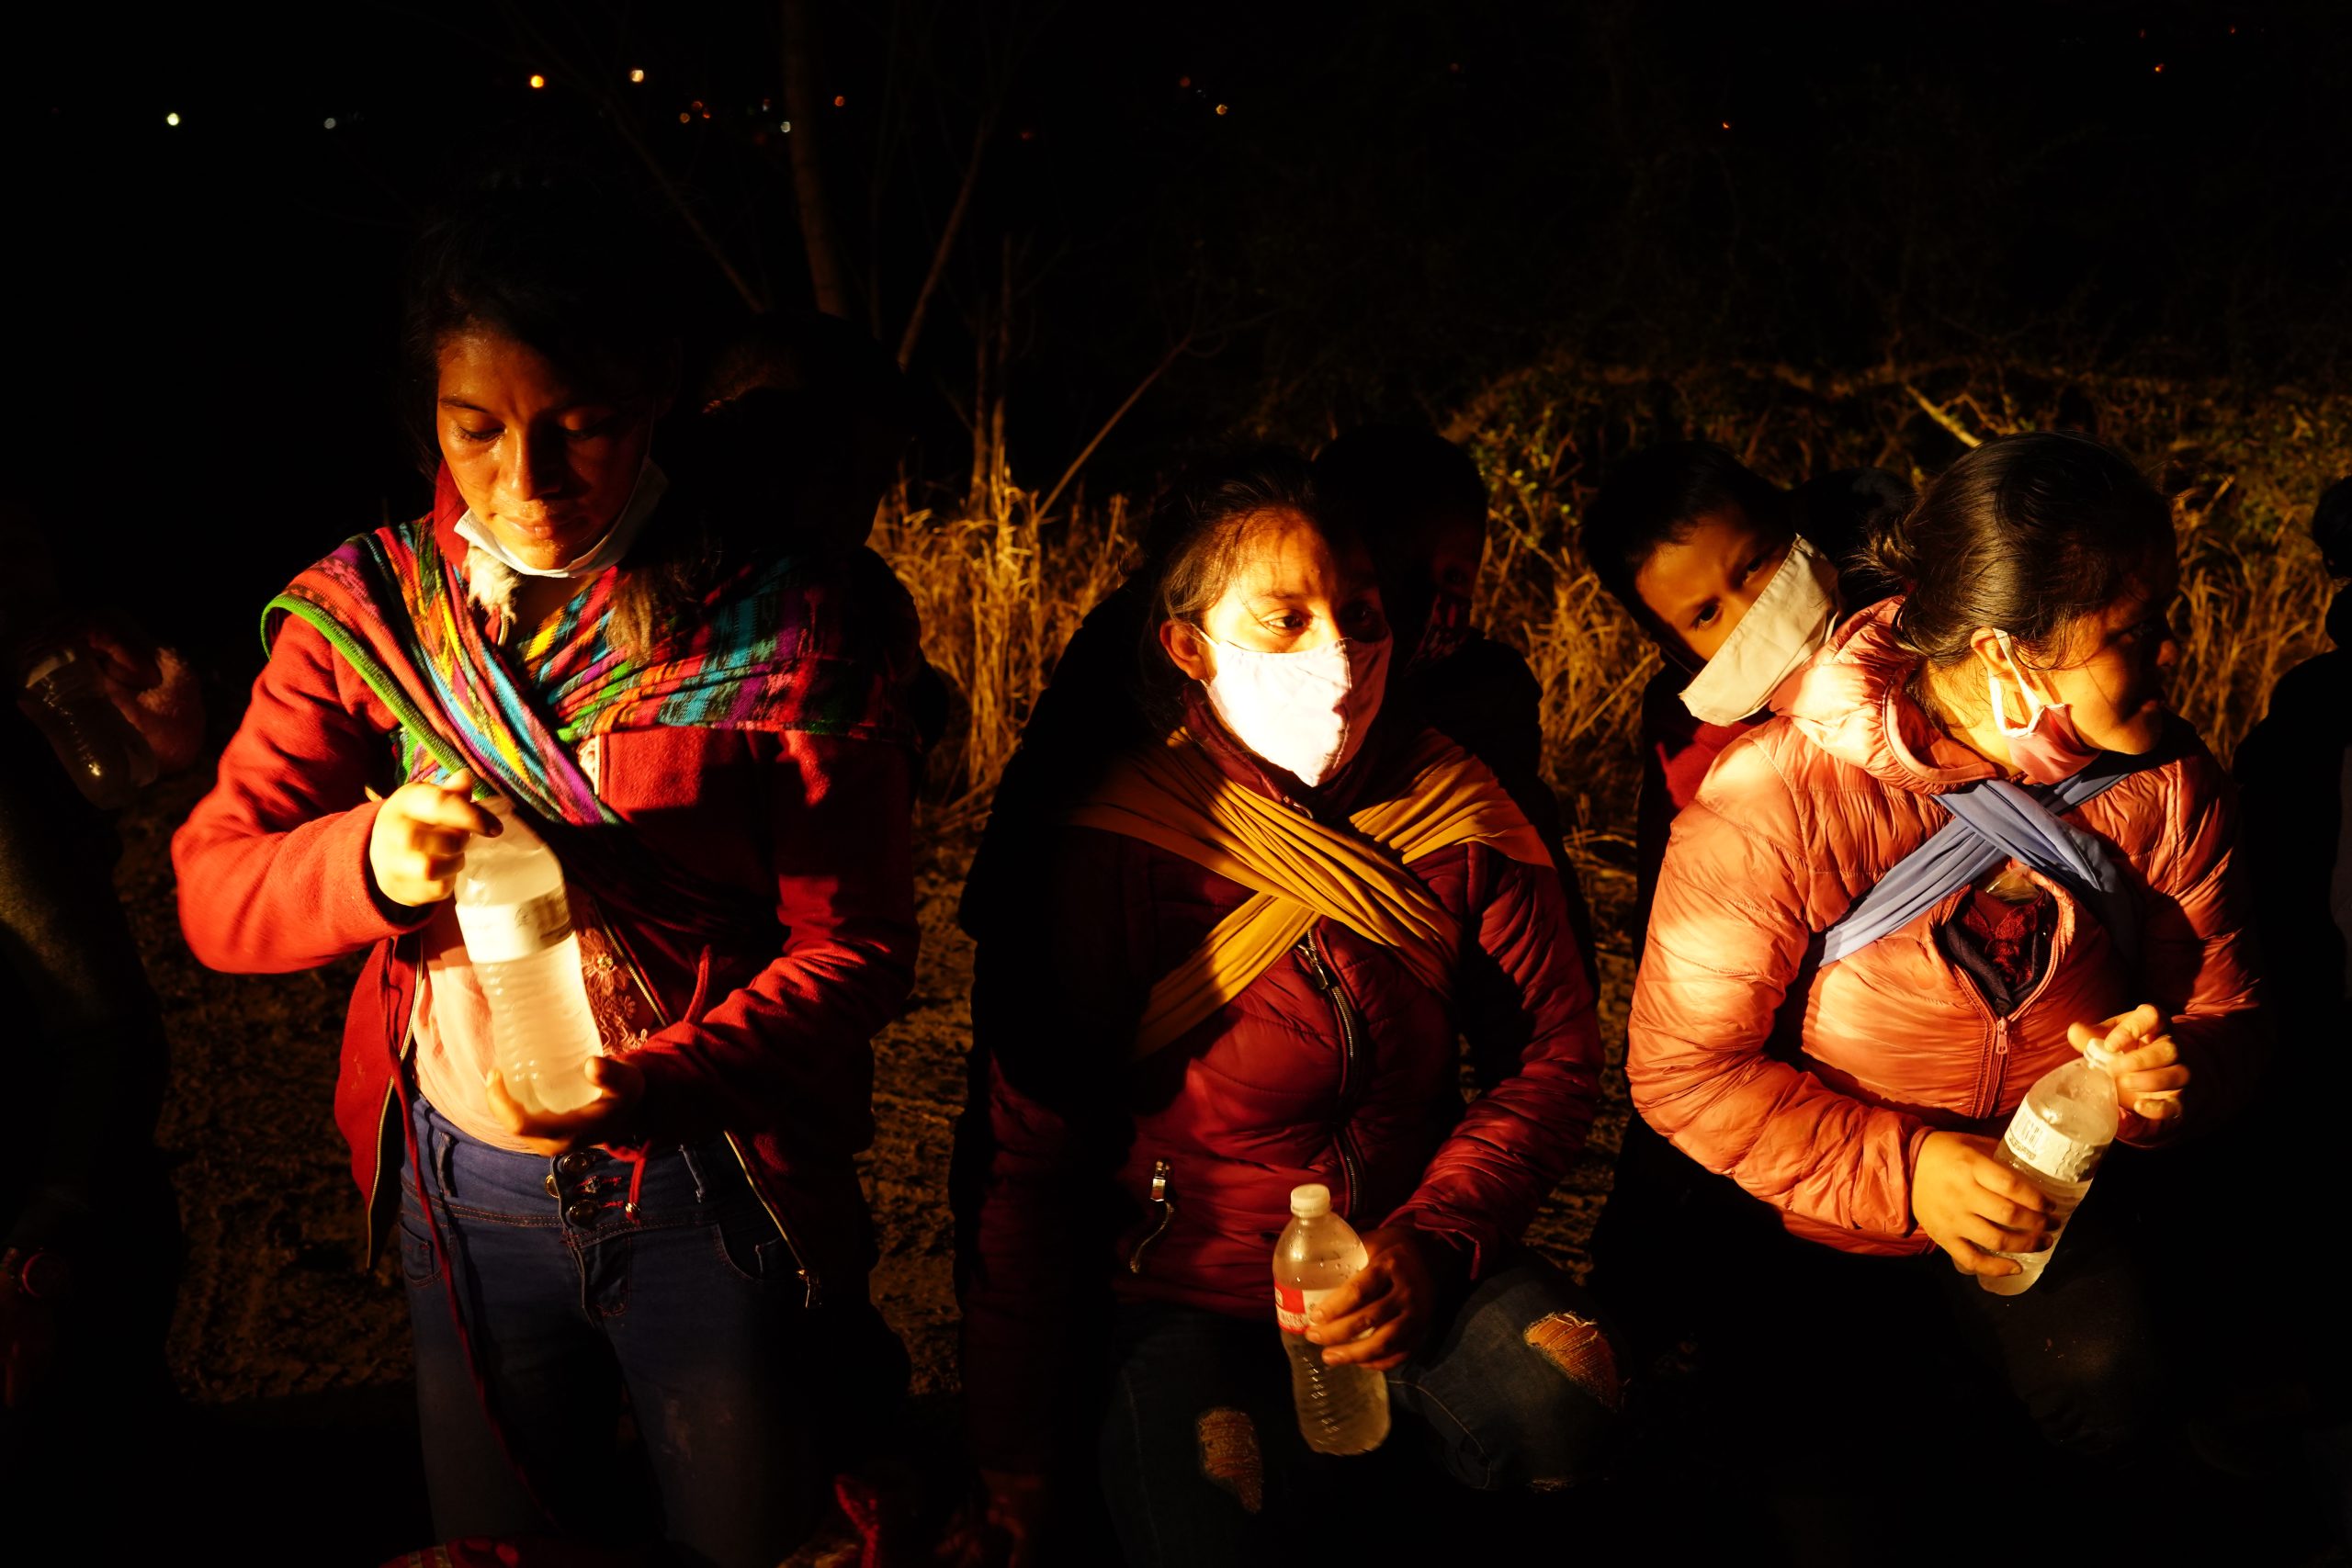 Familias centroamericanas se entregan en la frontera de EE.UU con la esperanza de asilo